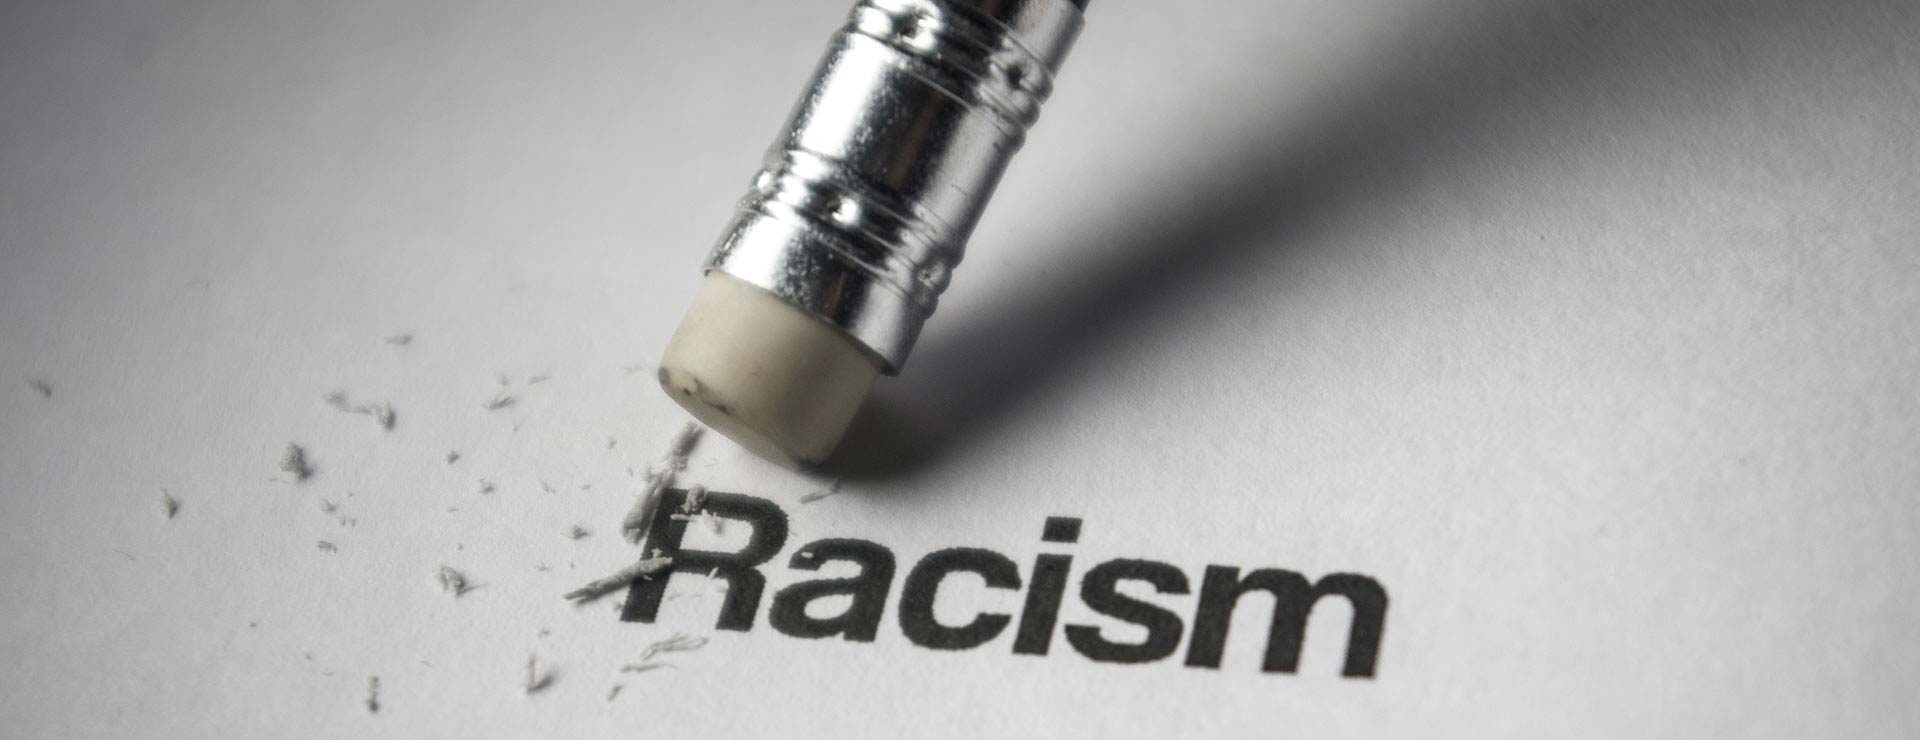 Das Bild zeigt ein Blatt Papier, auf dem das Wort Racism steht. Das Wort wird von einem Radiergummi ausradiert.